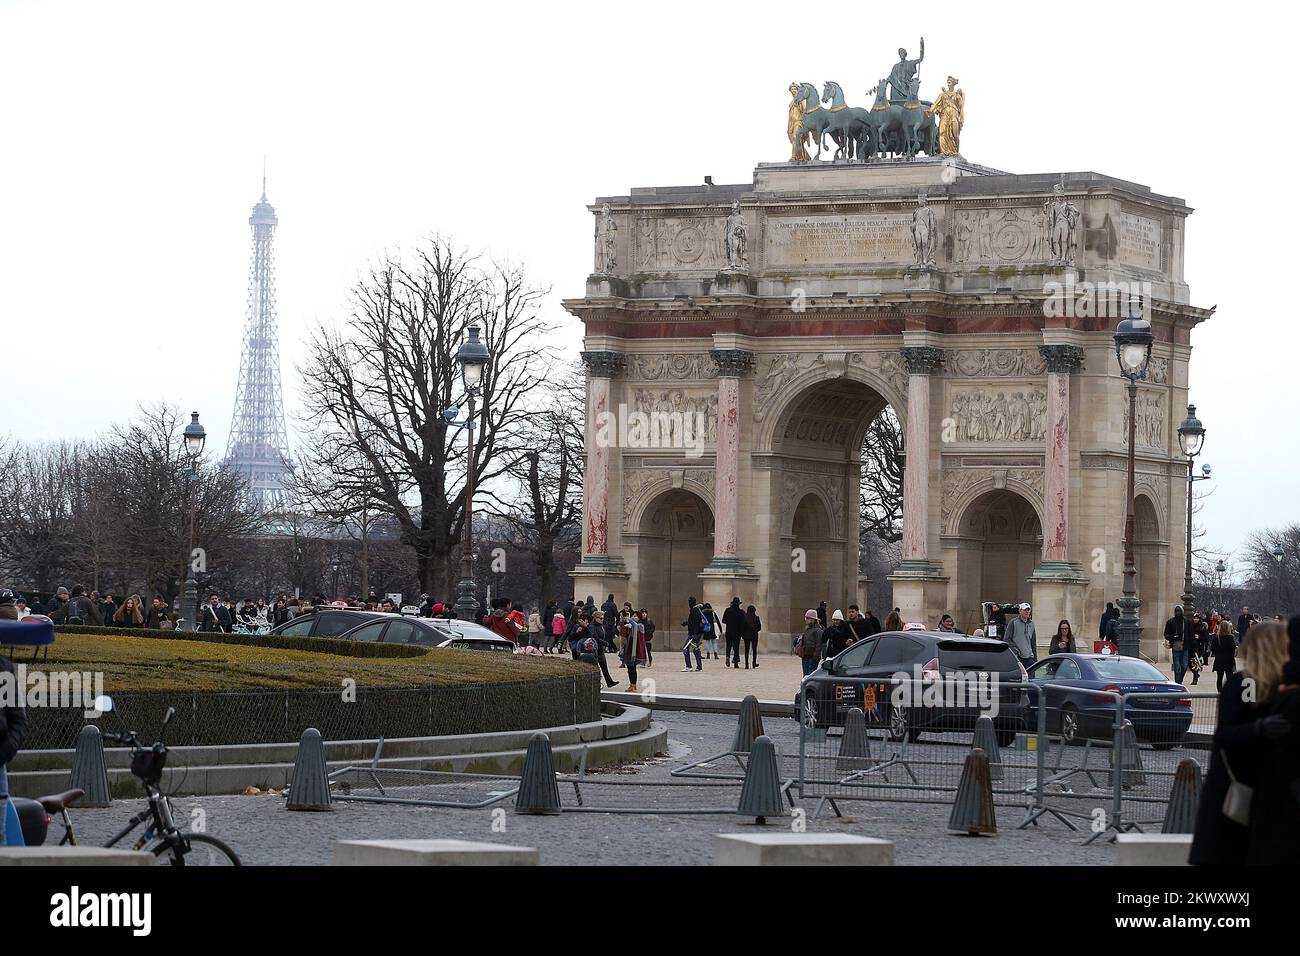 27.01.2017., Paris, Frankreich - Paris ist die Hauptstadt und größte Stadt Frankreichs. Gelegen am Ufer der seine, in Nordfrankreich, im Herzen der Ile-de-France, auch bekannt als die Region Paris. Die Bevölkerung von Paris, die seit 1860 weitgehend unverändert ist, wird auf 2.167.994 (Januar 2006) geschätzt, das heißt auf ein großstädtisches Gebiet mit über 11 Millionen Einwohnern, das die bevölkerungsreichsten großstädtischen Ballungsgebiete Europas ist. Paris ist seit mehr als zwei Jahrtausenden eine wichtige Siedlung und heute eines der weltweit führenden Geschäfts- und Kulturzentren mit Einflüssen in Politik, Bildung und Unterhaltung Stockfoto